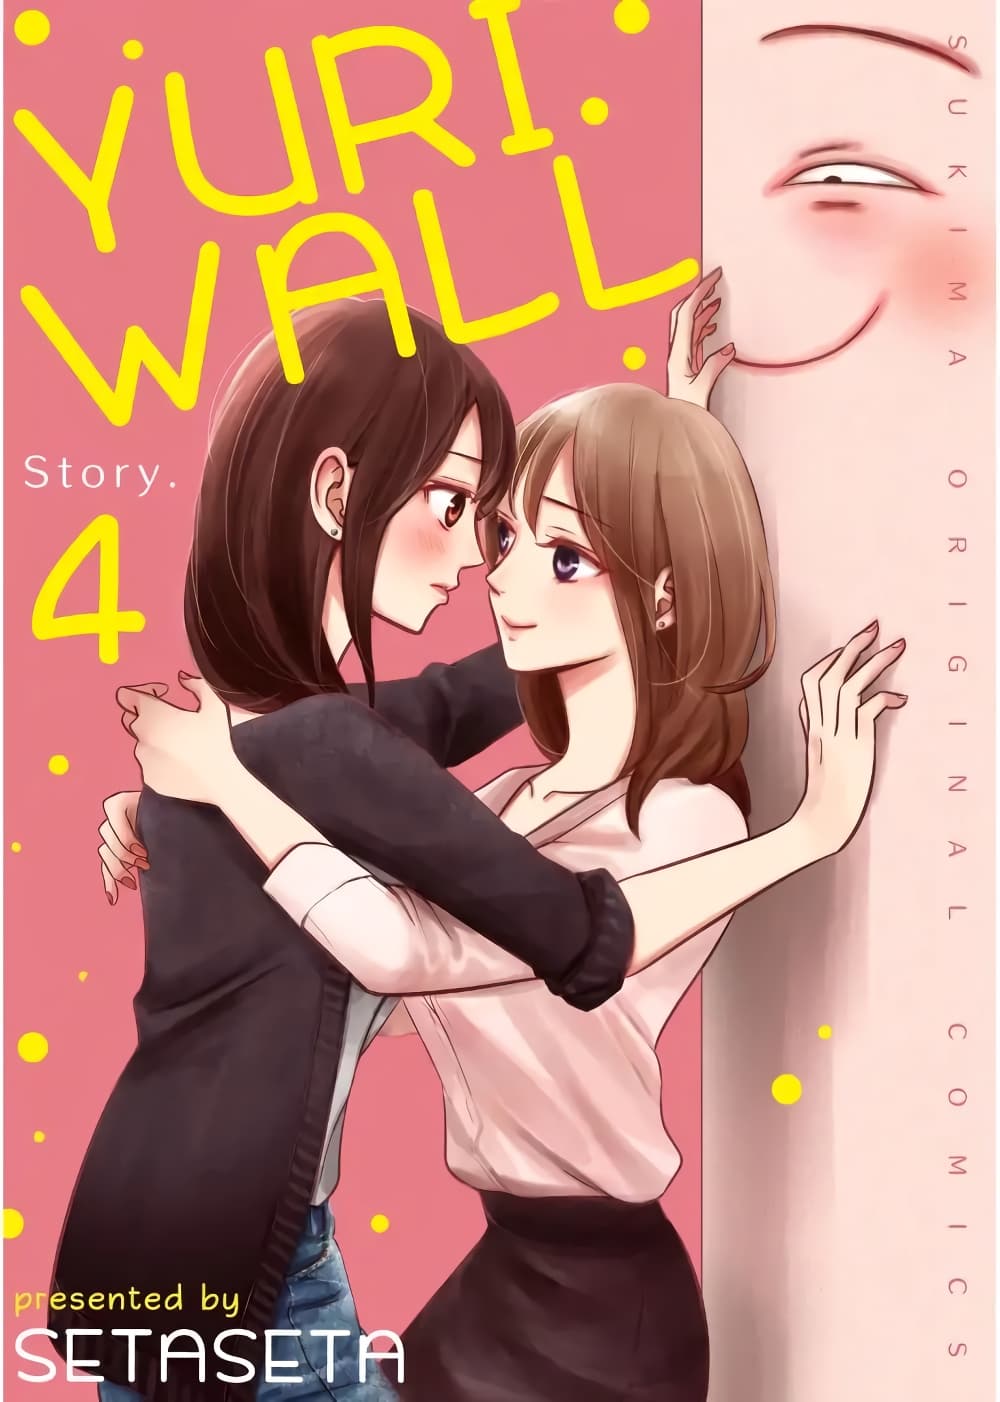 Yuri Wall 4 (1)